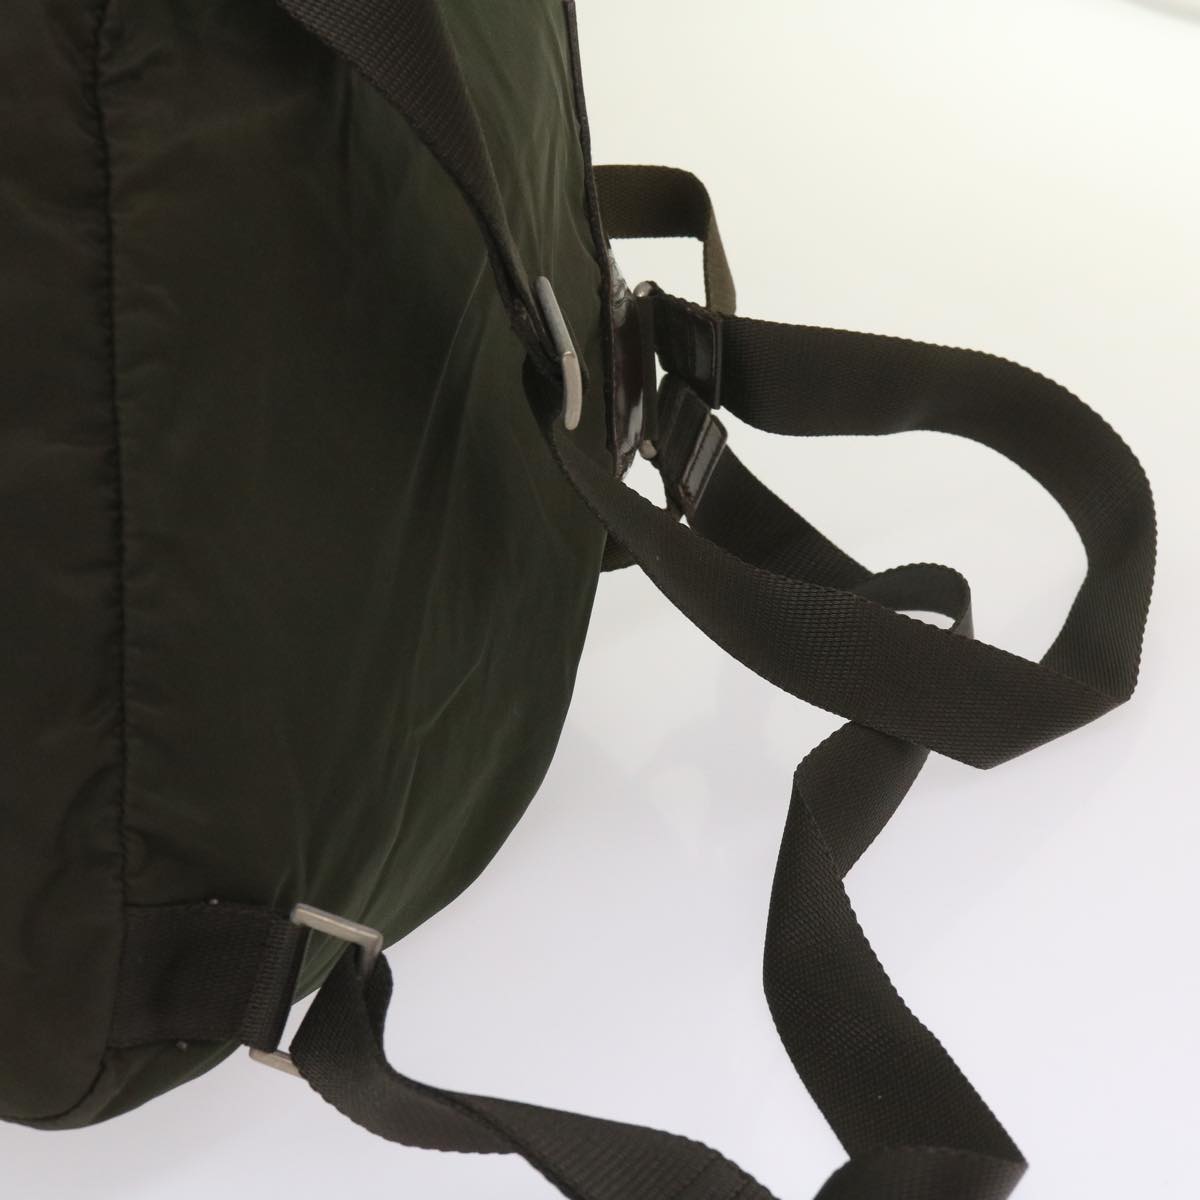 PRADA Backpack Nylon Green Auth ac2752